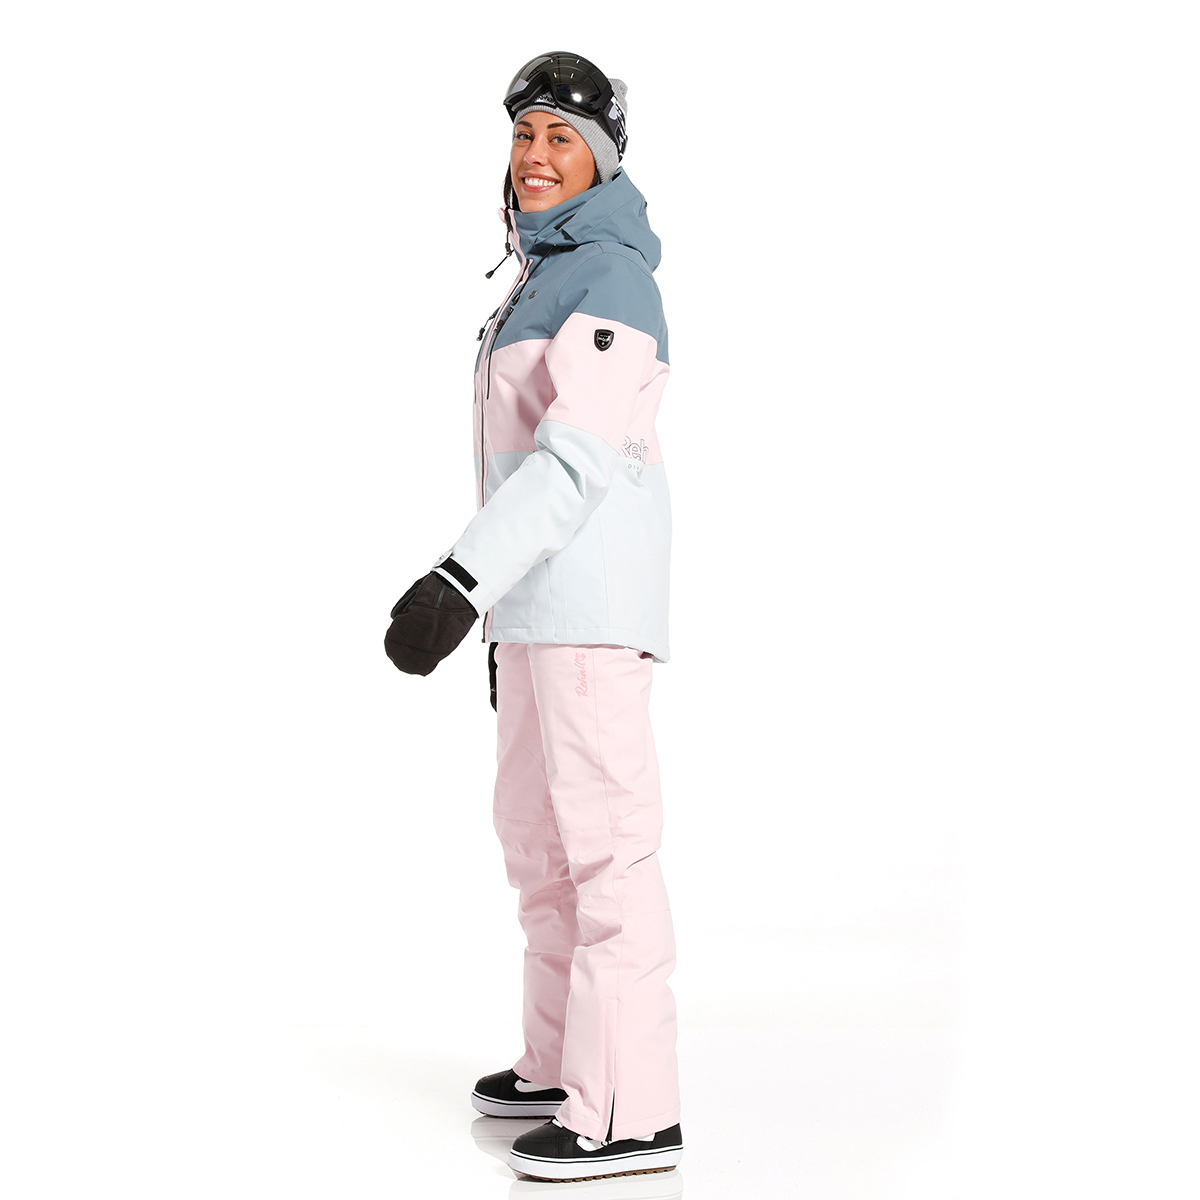  Ski & Snow Jackets -  rehall RICKY-R Womens Snowjacket